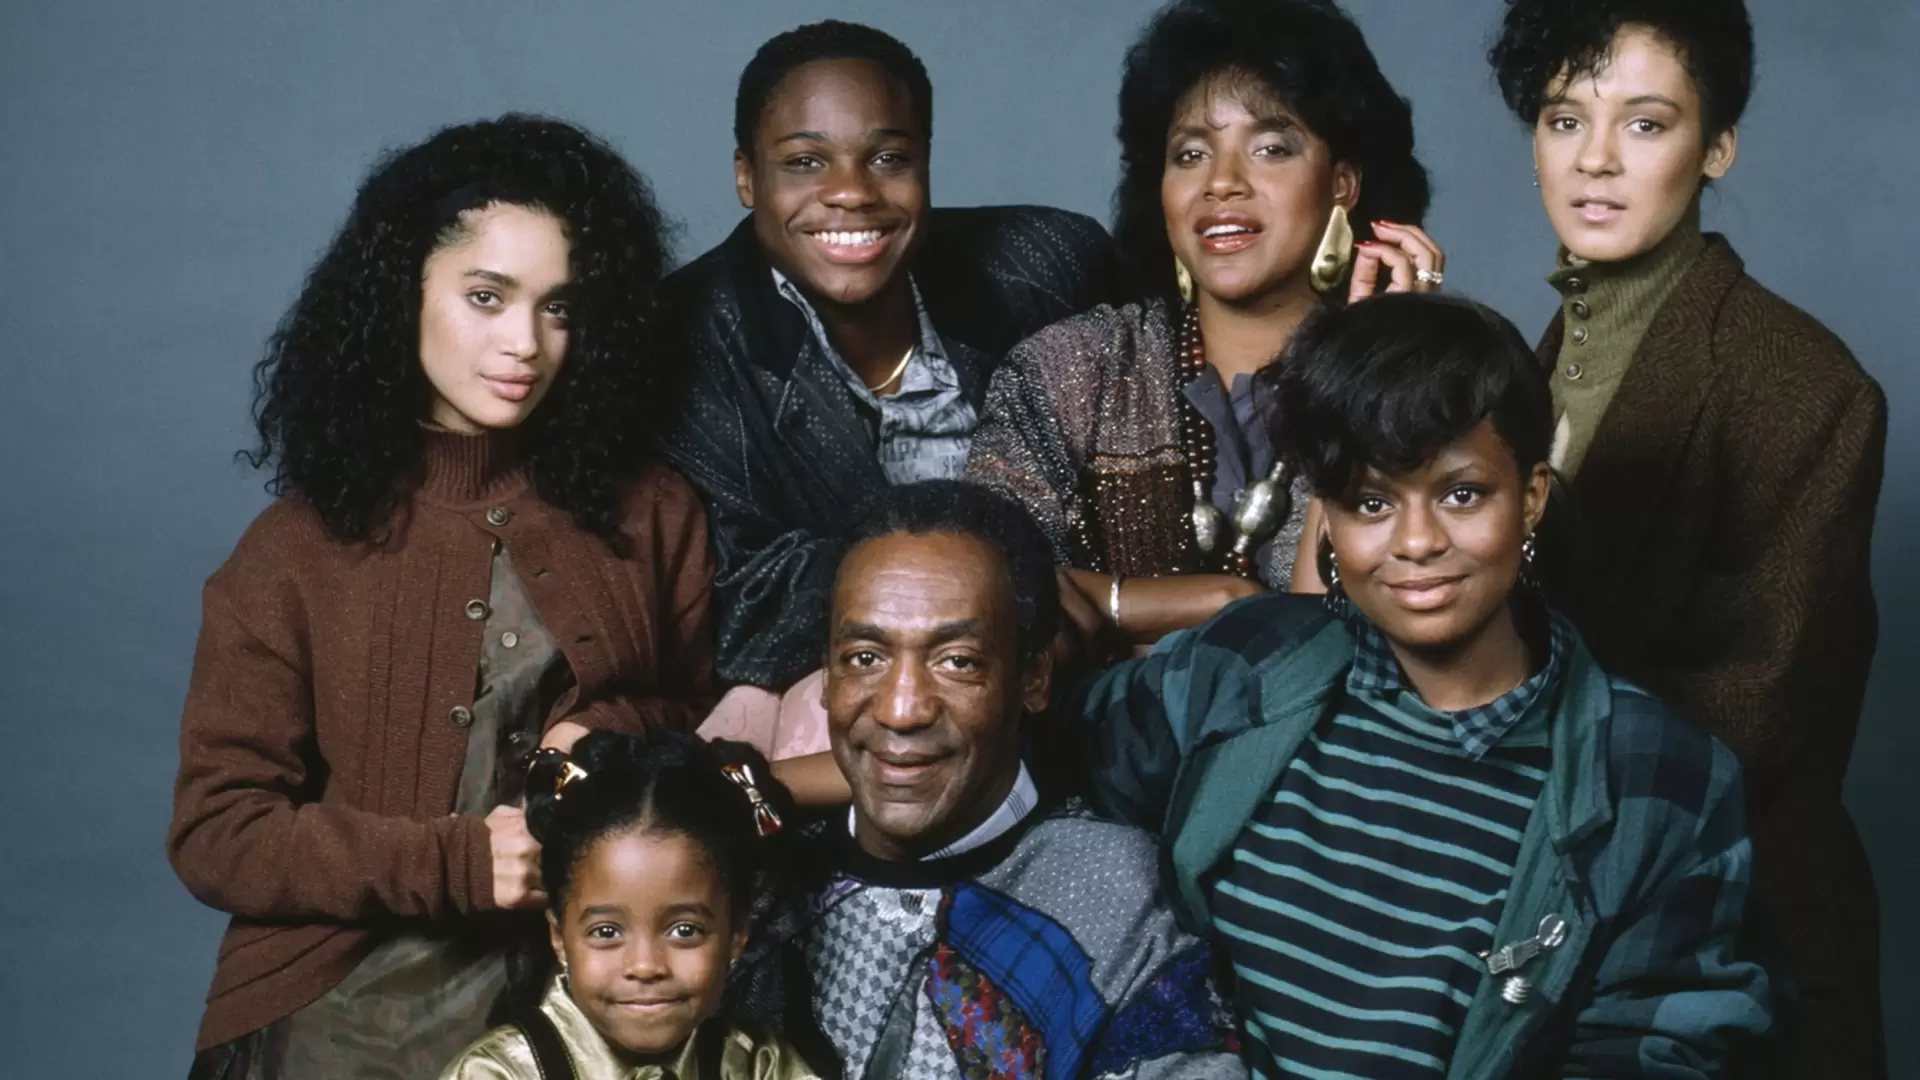 دانلود سریال The Cosby Show 1984